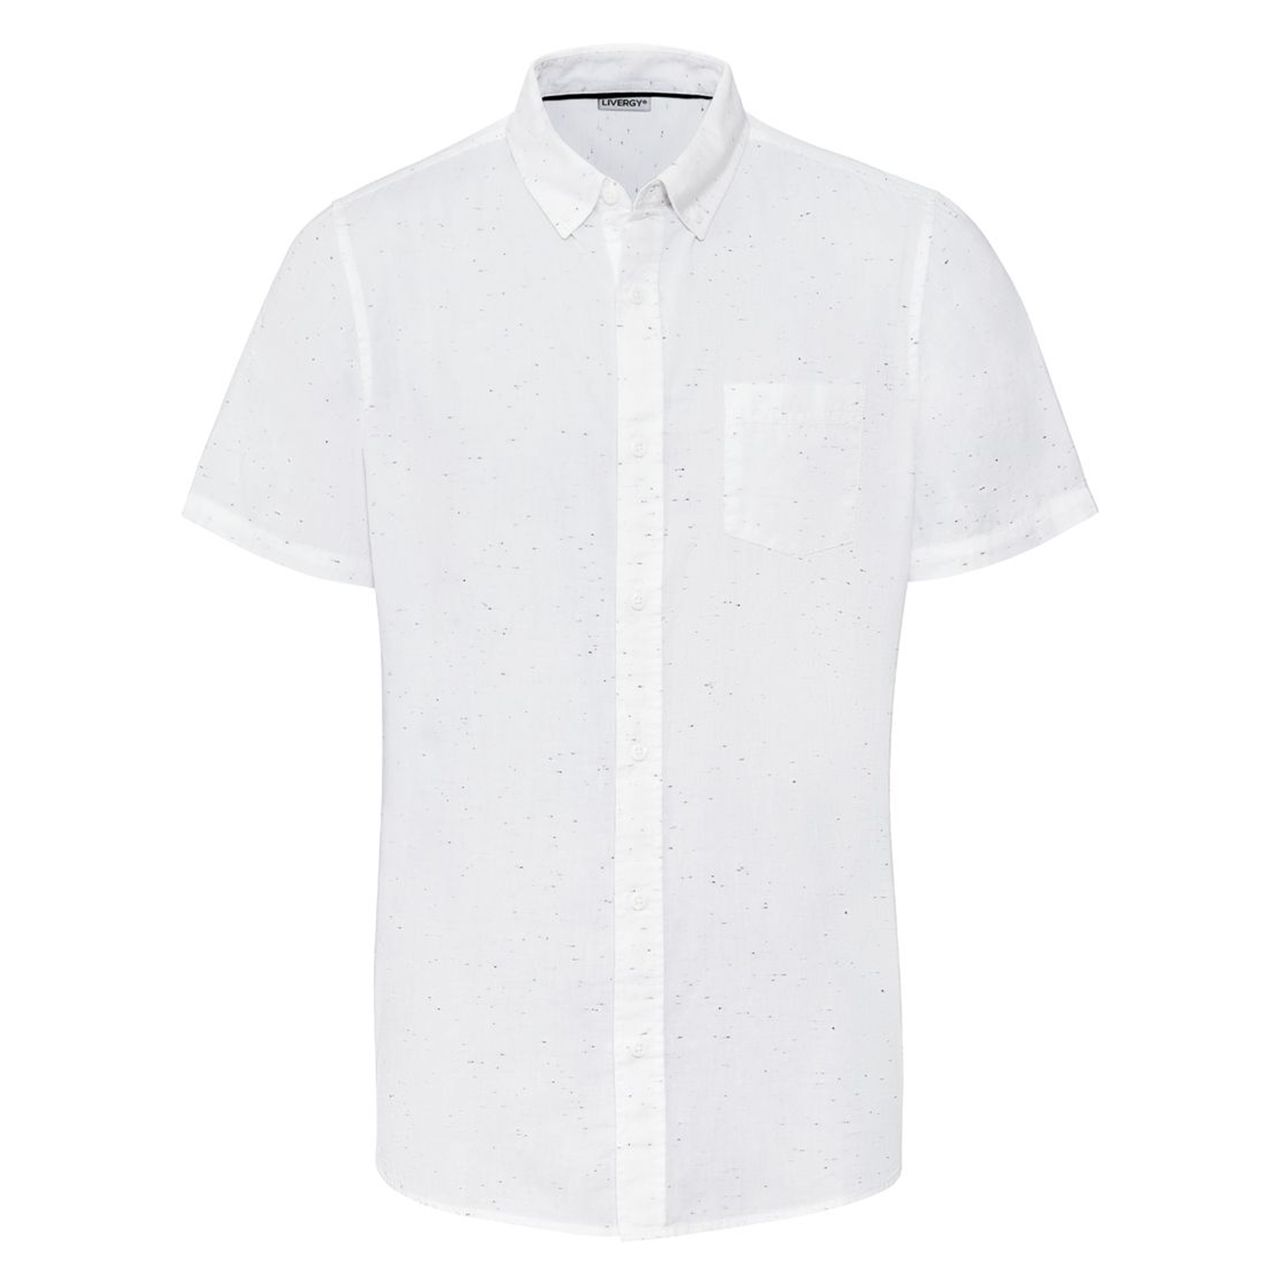 پیراهن آستین کوتاه مردانه لیورجی مدل p339469 رنگ سفید